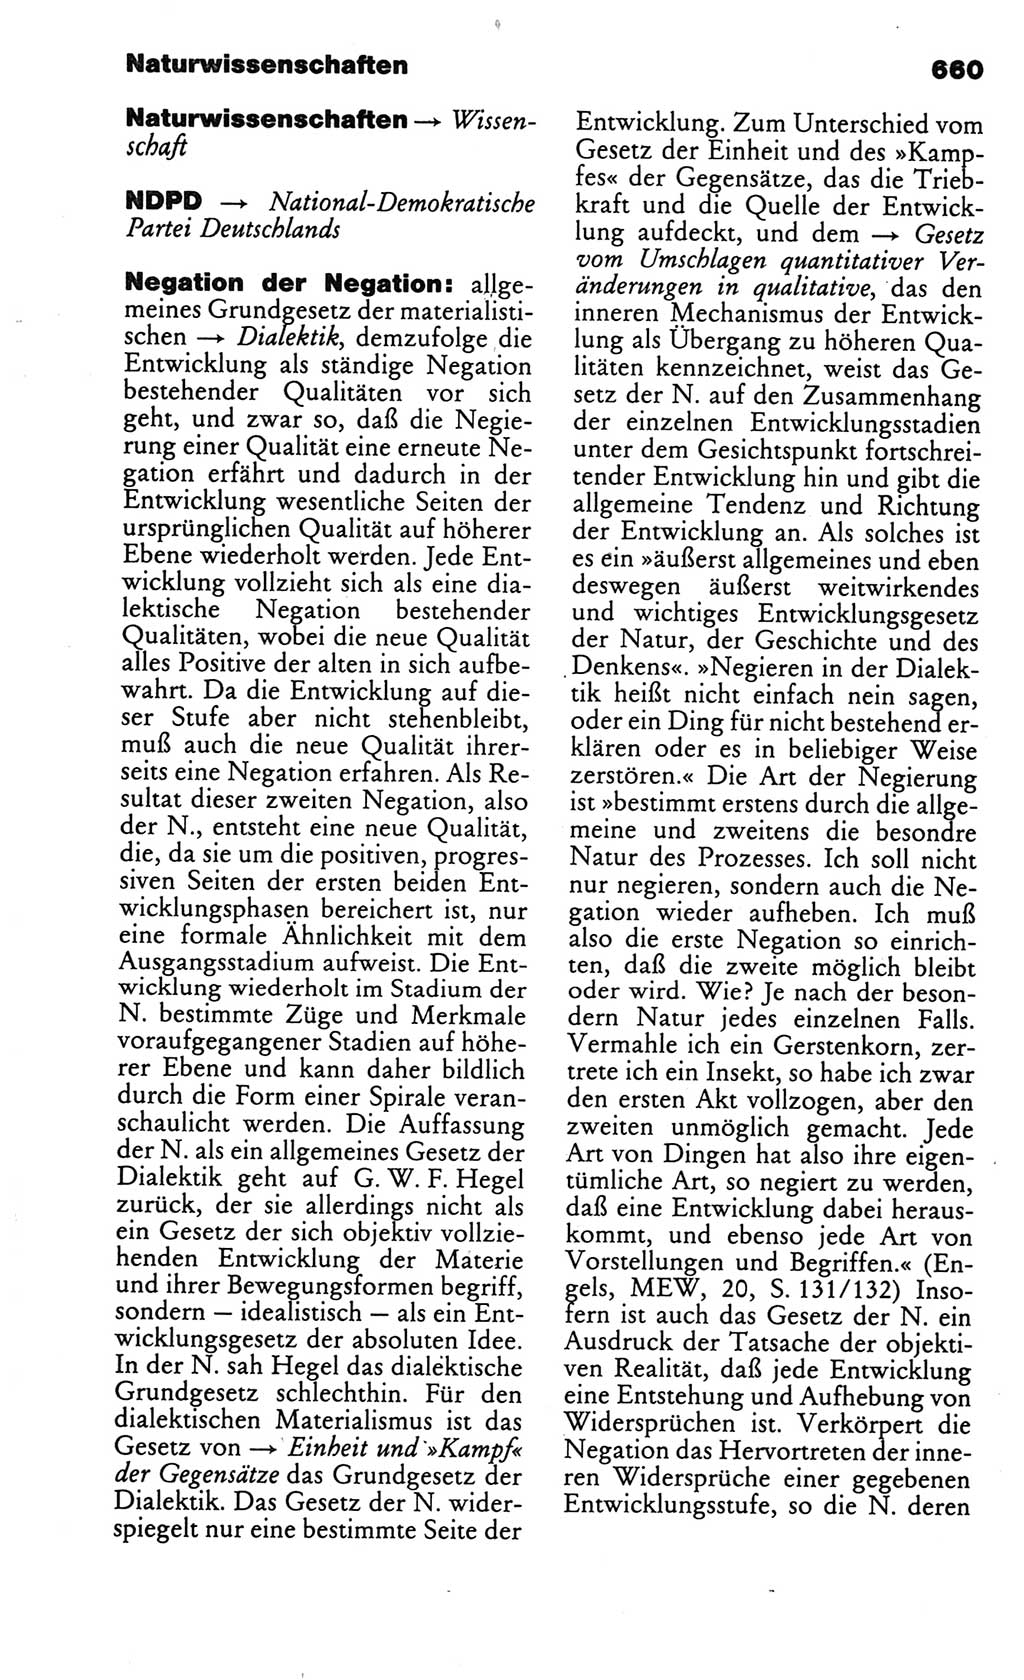 Kleines politisches Wörterbuch [Deutsche Demokratische Republik (DDR)] 1986, Seite 660 (Kl. pol. Wb. DDR 1986, S. 660)